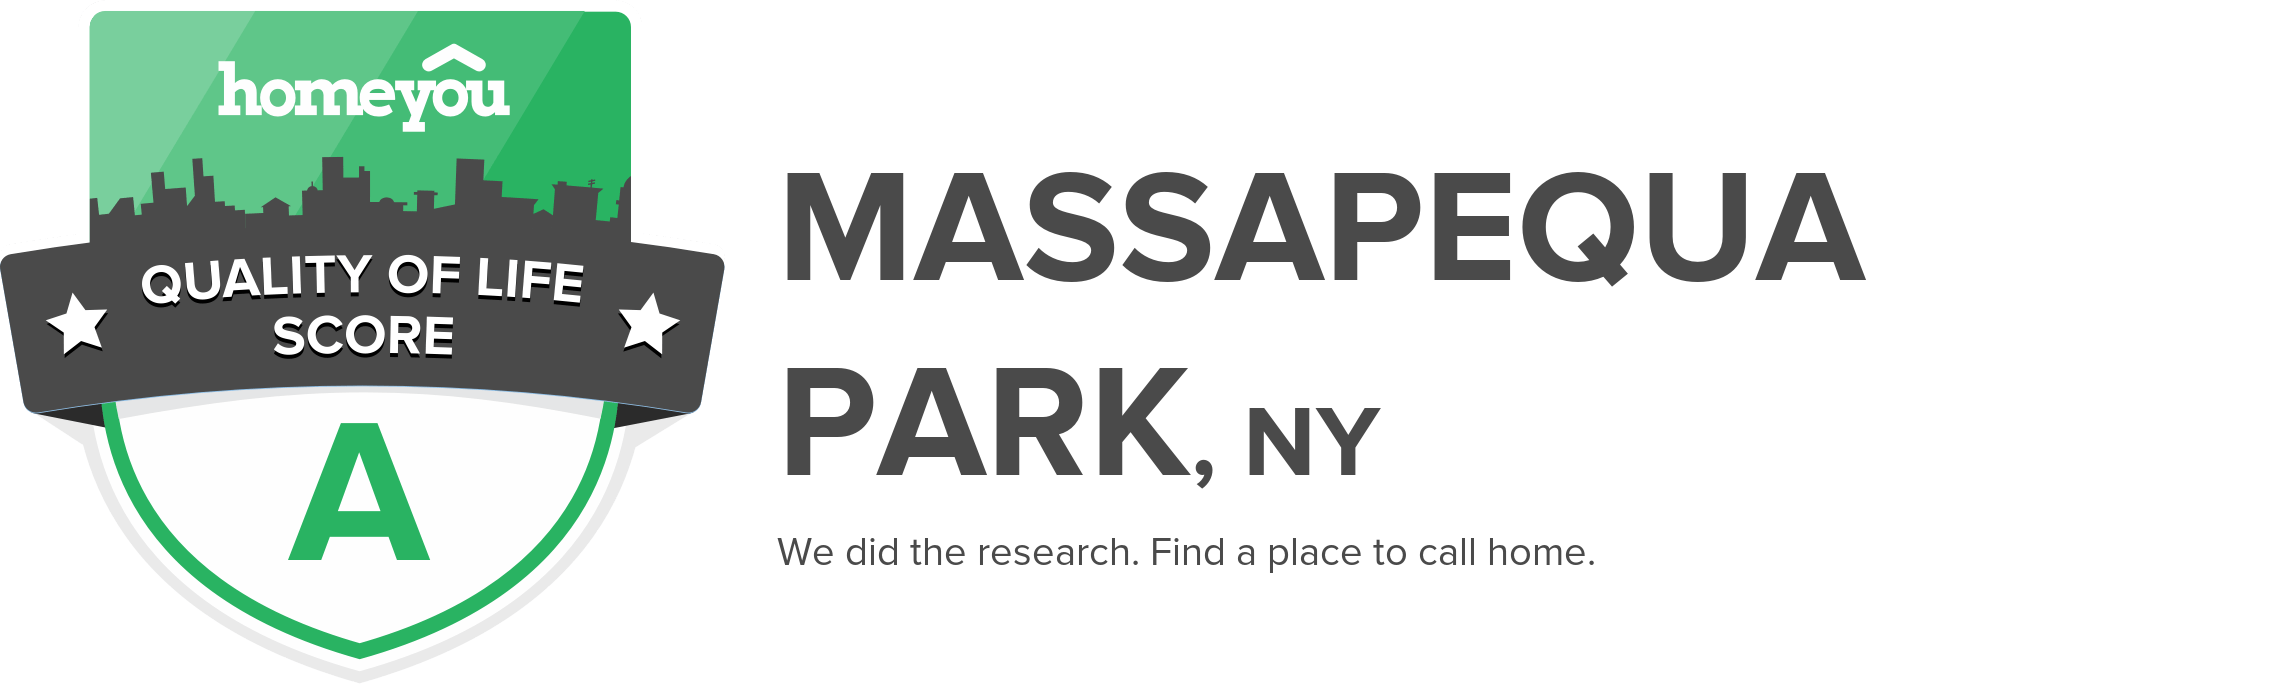 Massapequa Park, NY